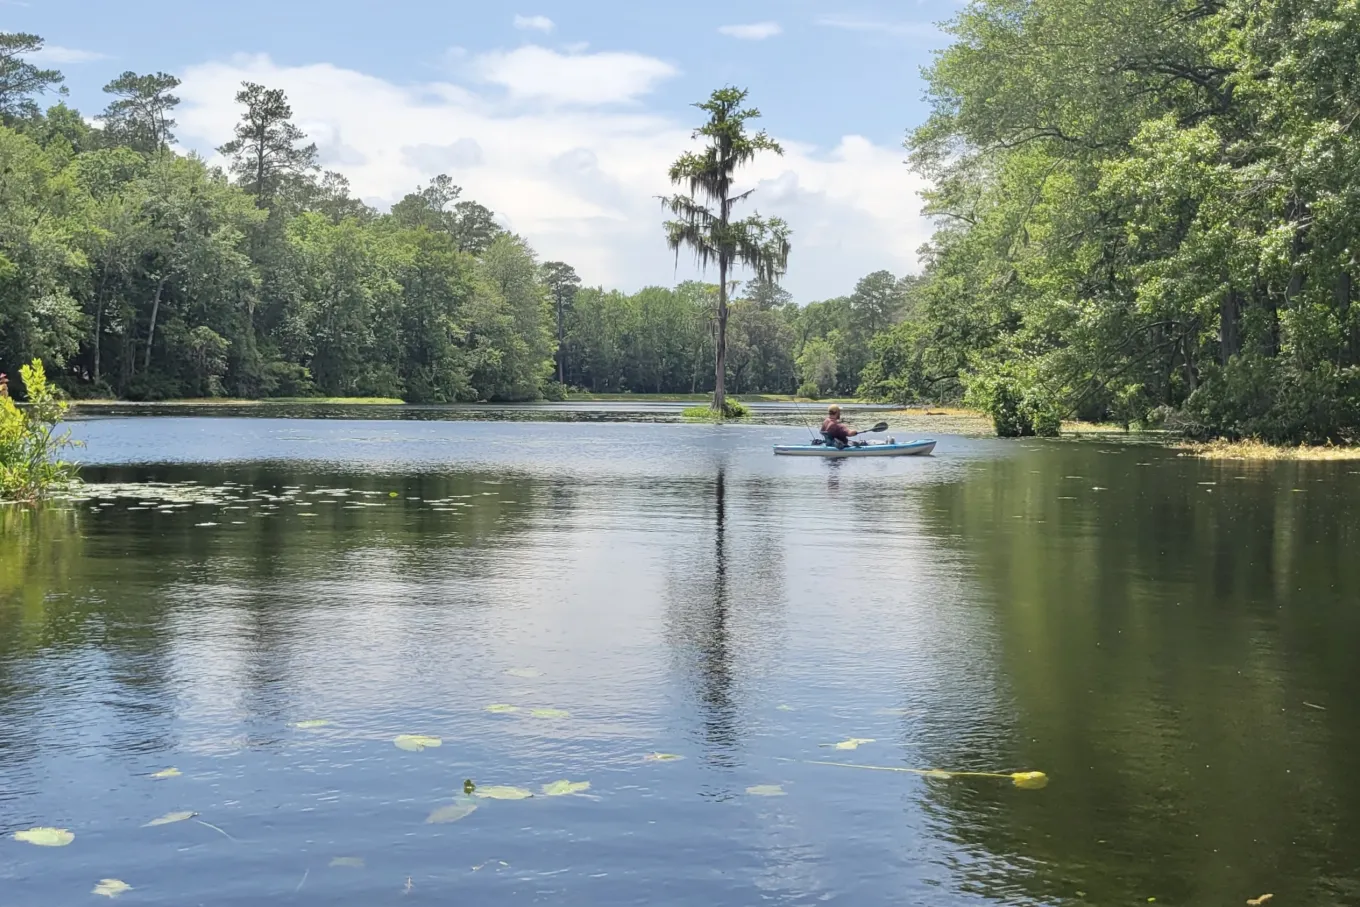 Kayaker on lake